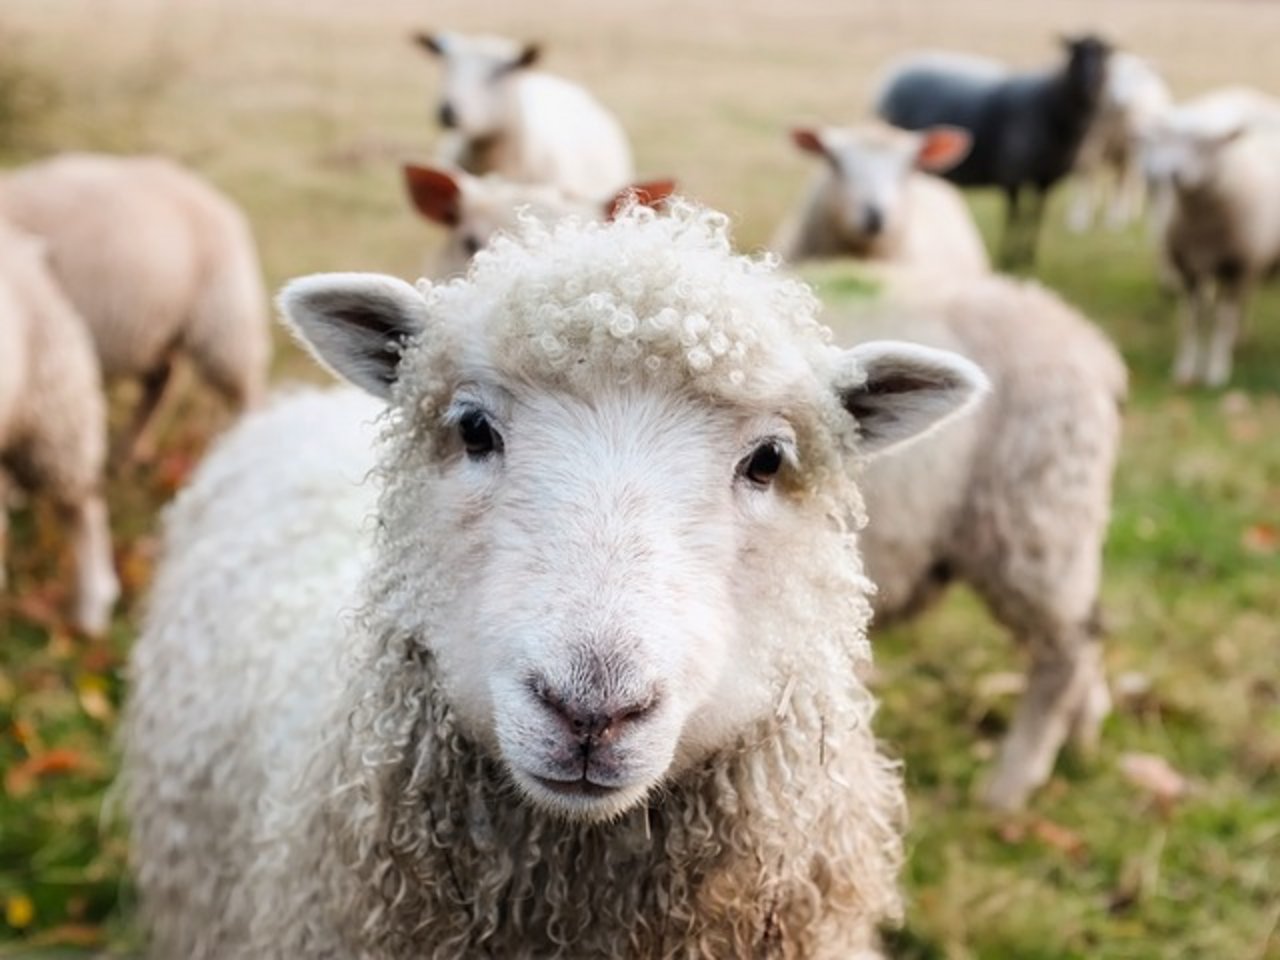 Verschiedene Nutztiere können von Salmonellen befallen werden. Bei Schafen führt eine Infektion mit diesen Bakterien häufig zu Aborten. (Bild Pixabay)